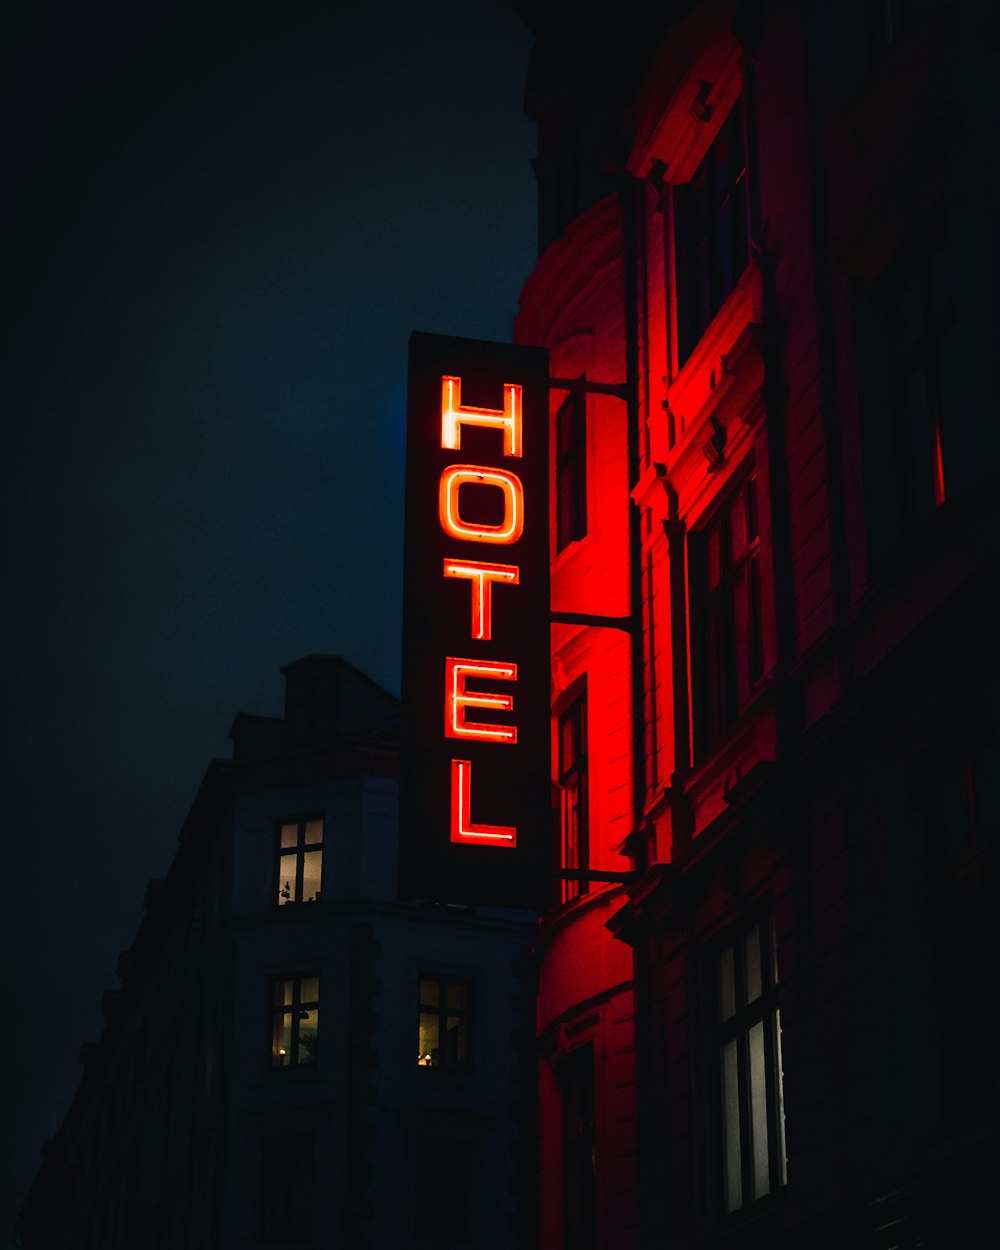 turned-on Hotel LED signage photo – Free Image on Unsplash